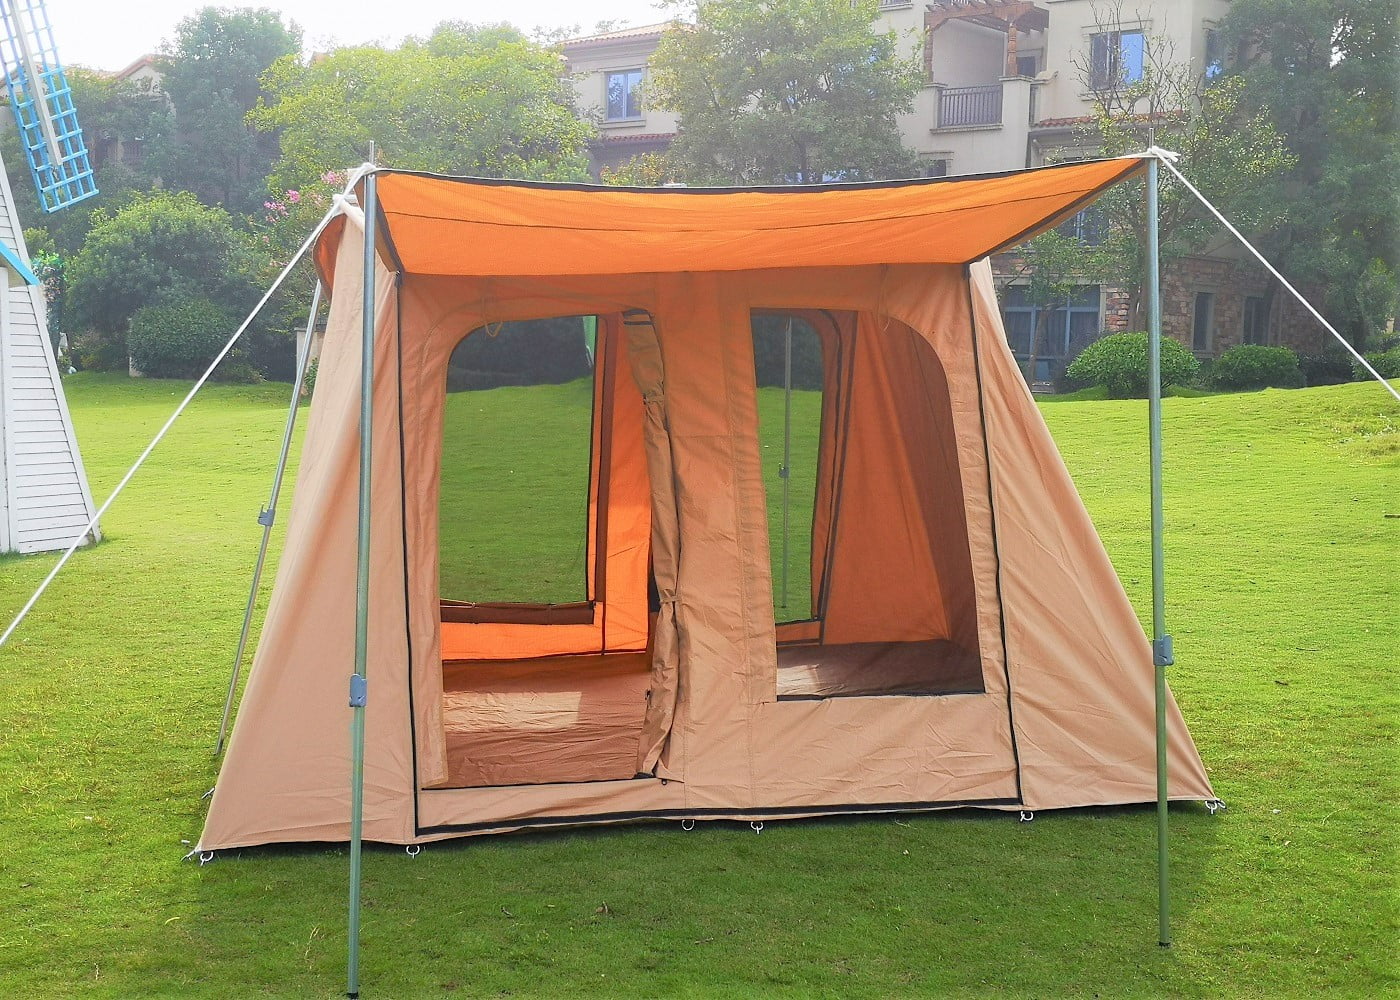 Psyclone Tents Removable Floor 4 Windows 5m/16.4ft Luxury Outdoor 